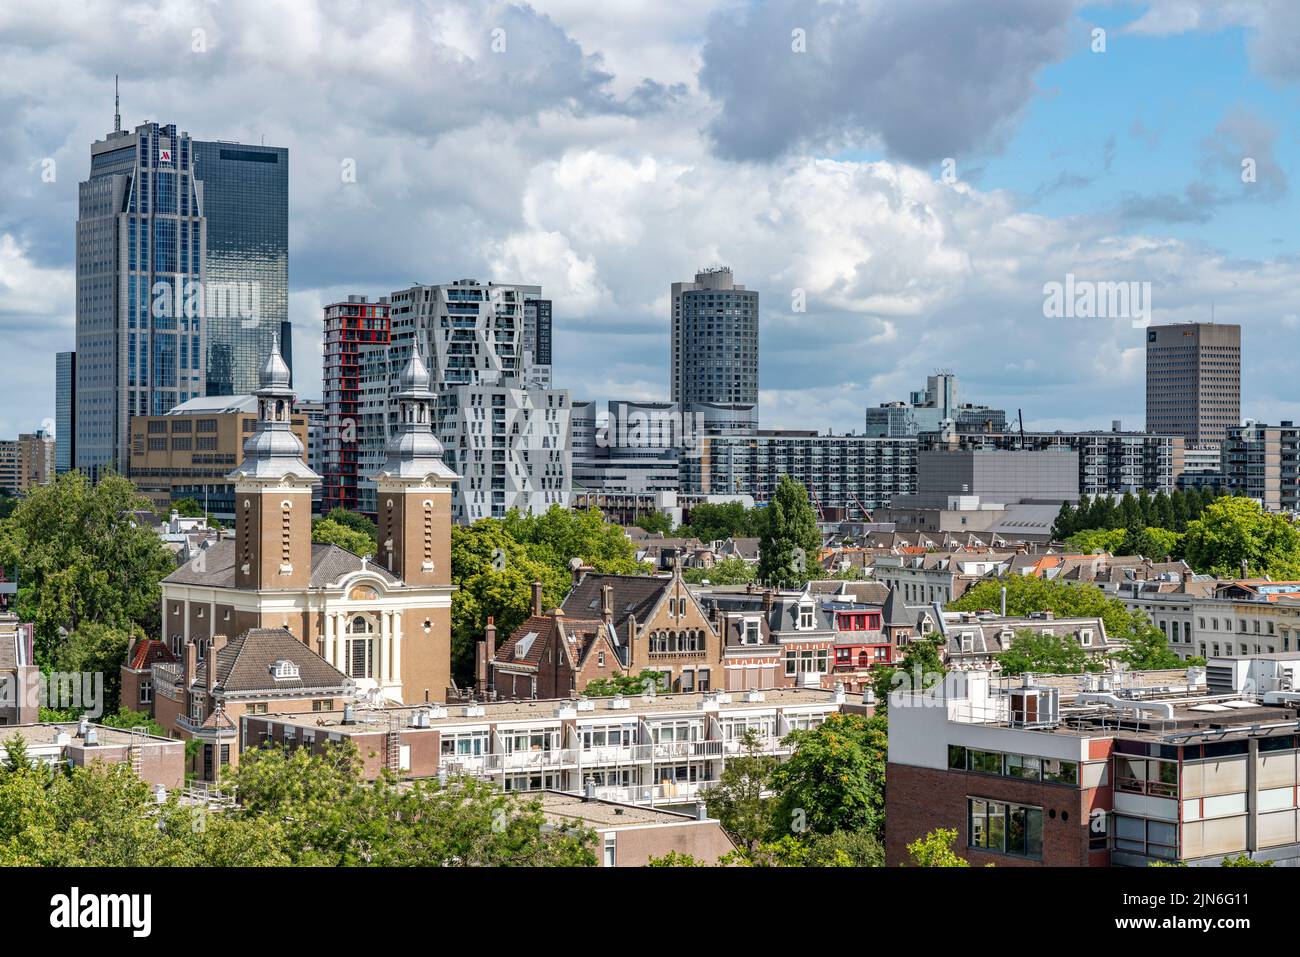 El horizonte de Rotterdam, el centro de la ciudad, edificios alrededor de Delftse Poort, Países Bajos Foto de stock